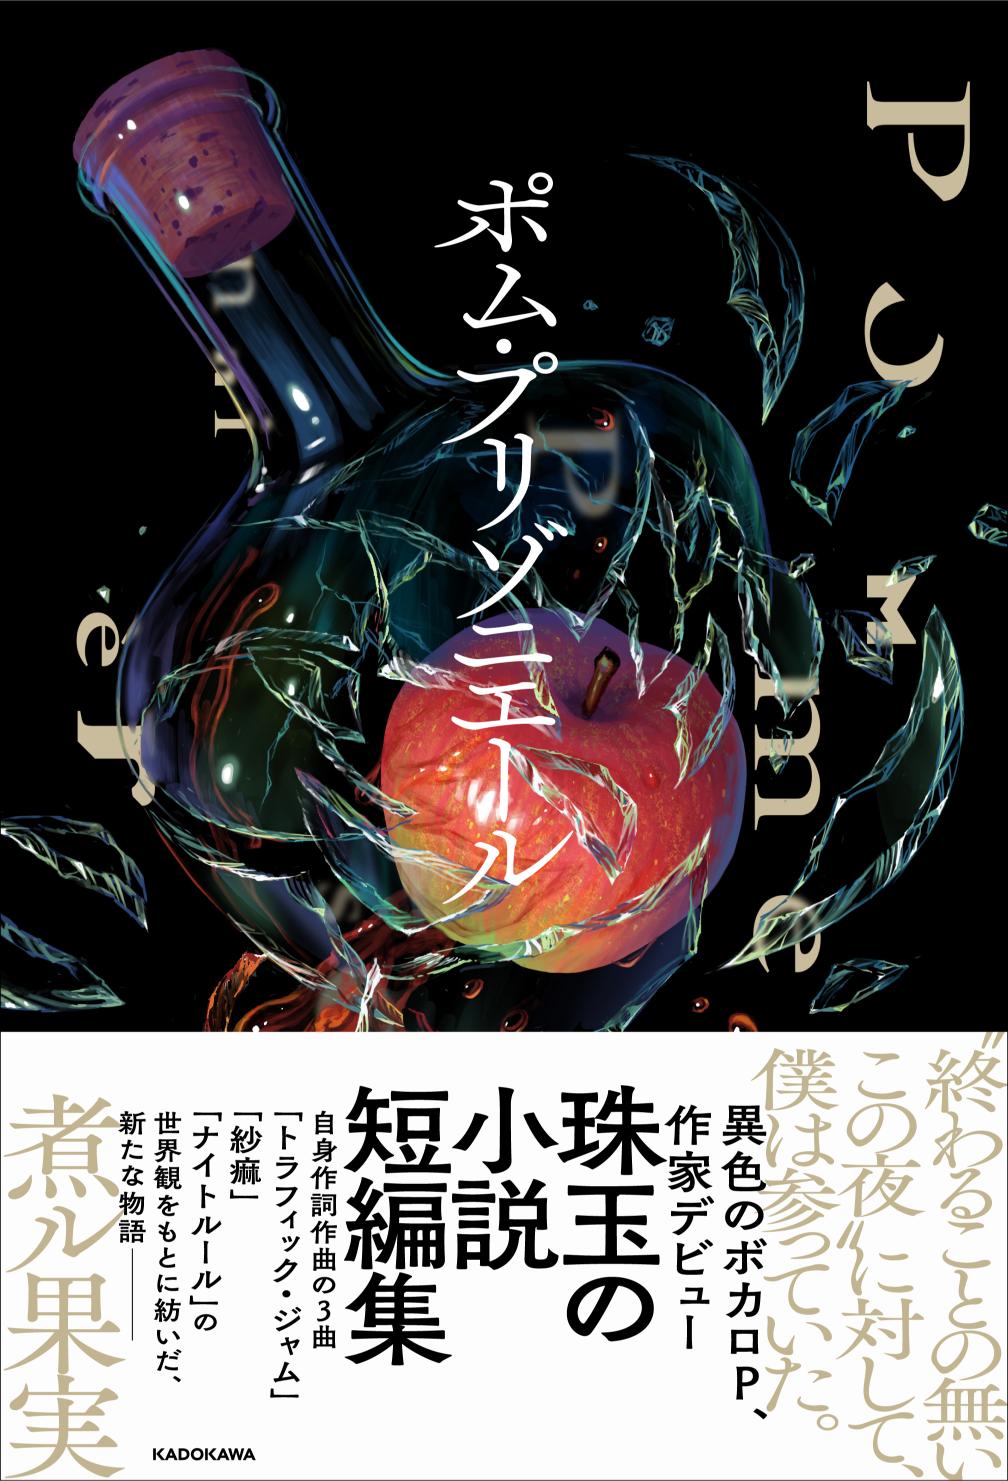 ボカロP・煮ル果実、KADOKAWAから小説出版